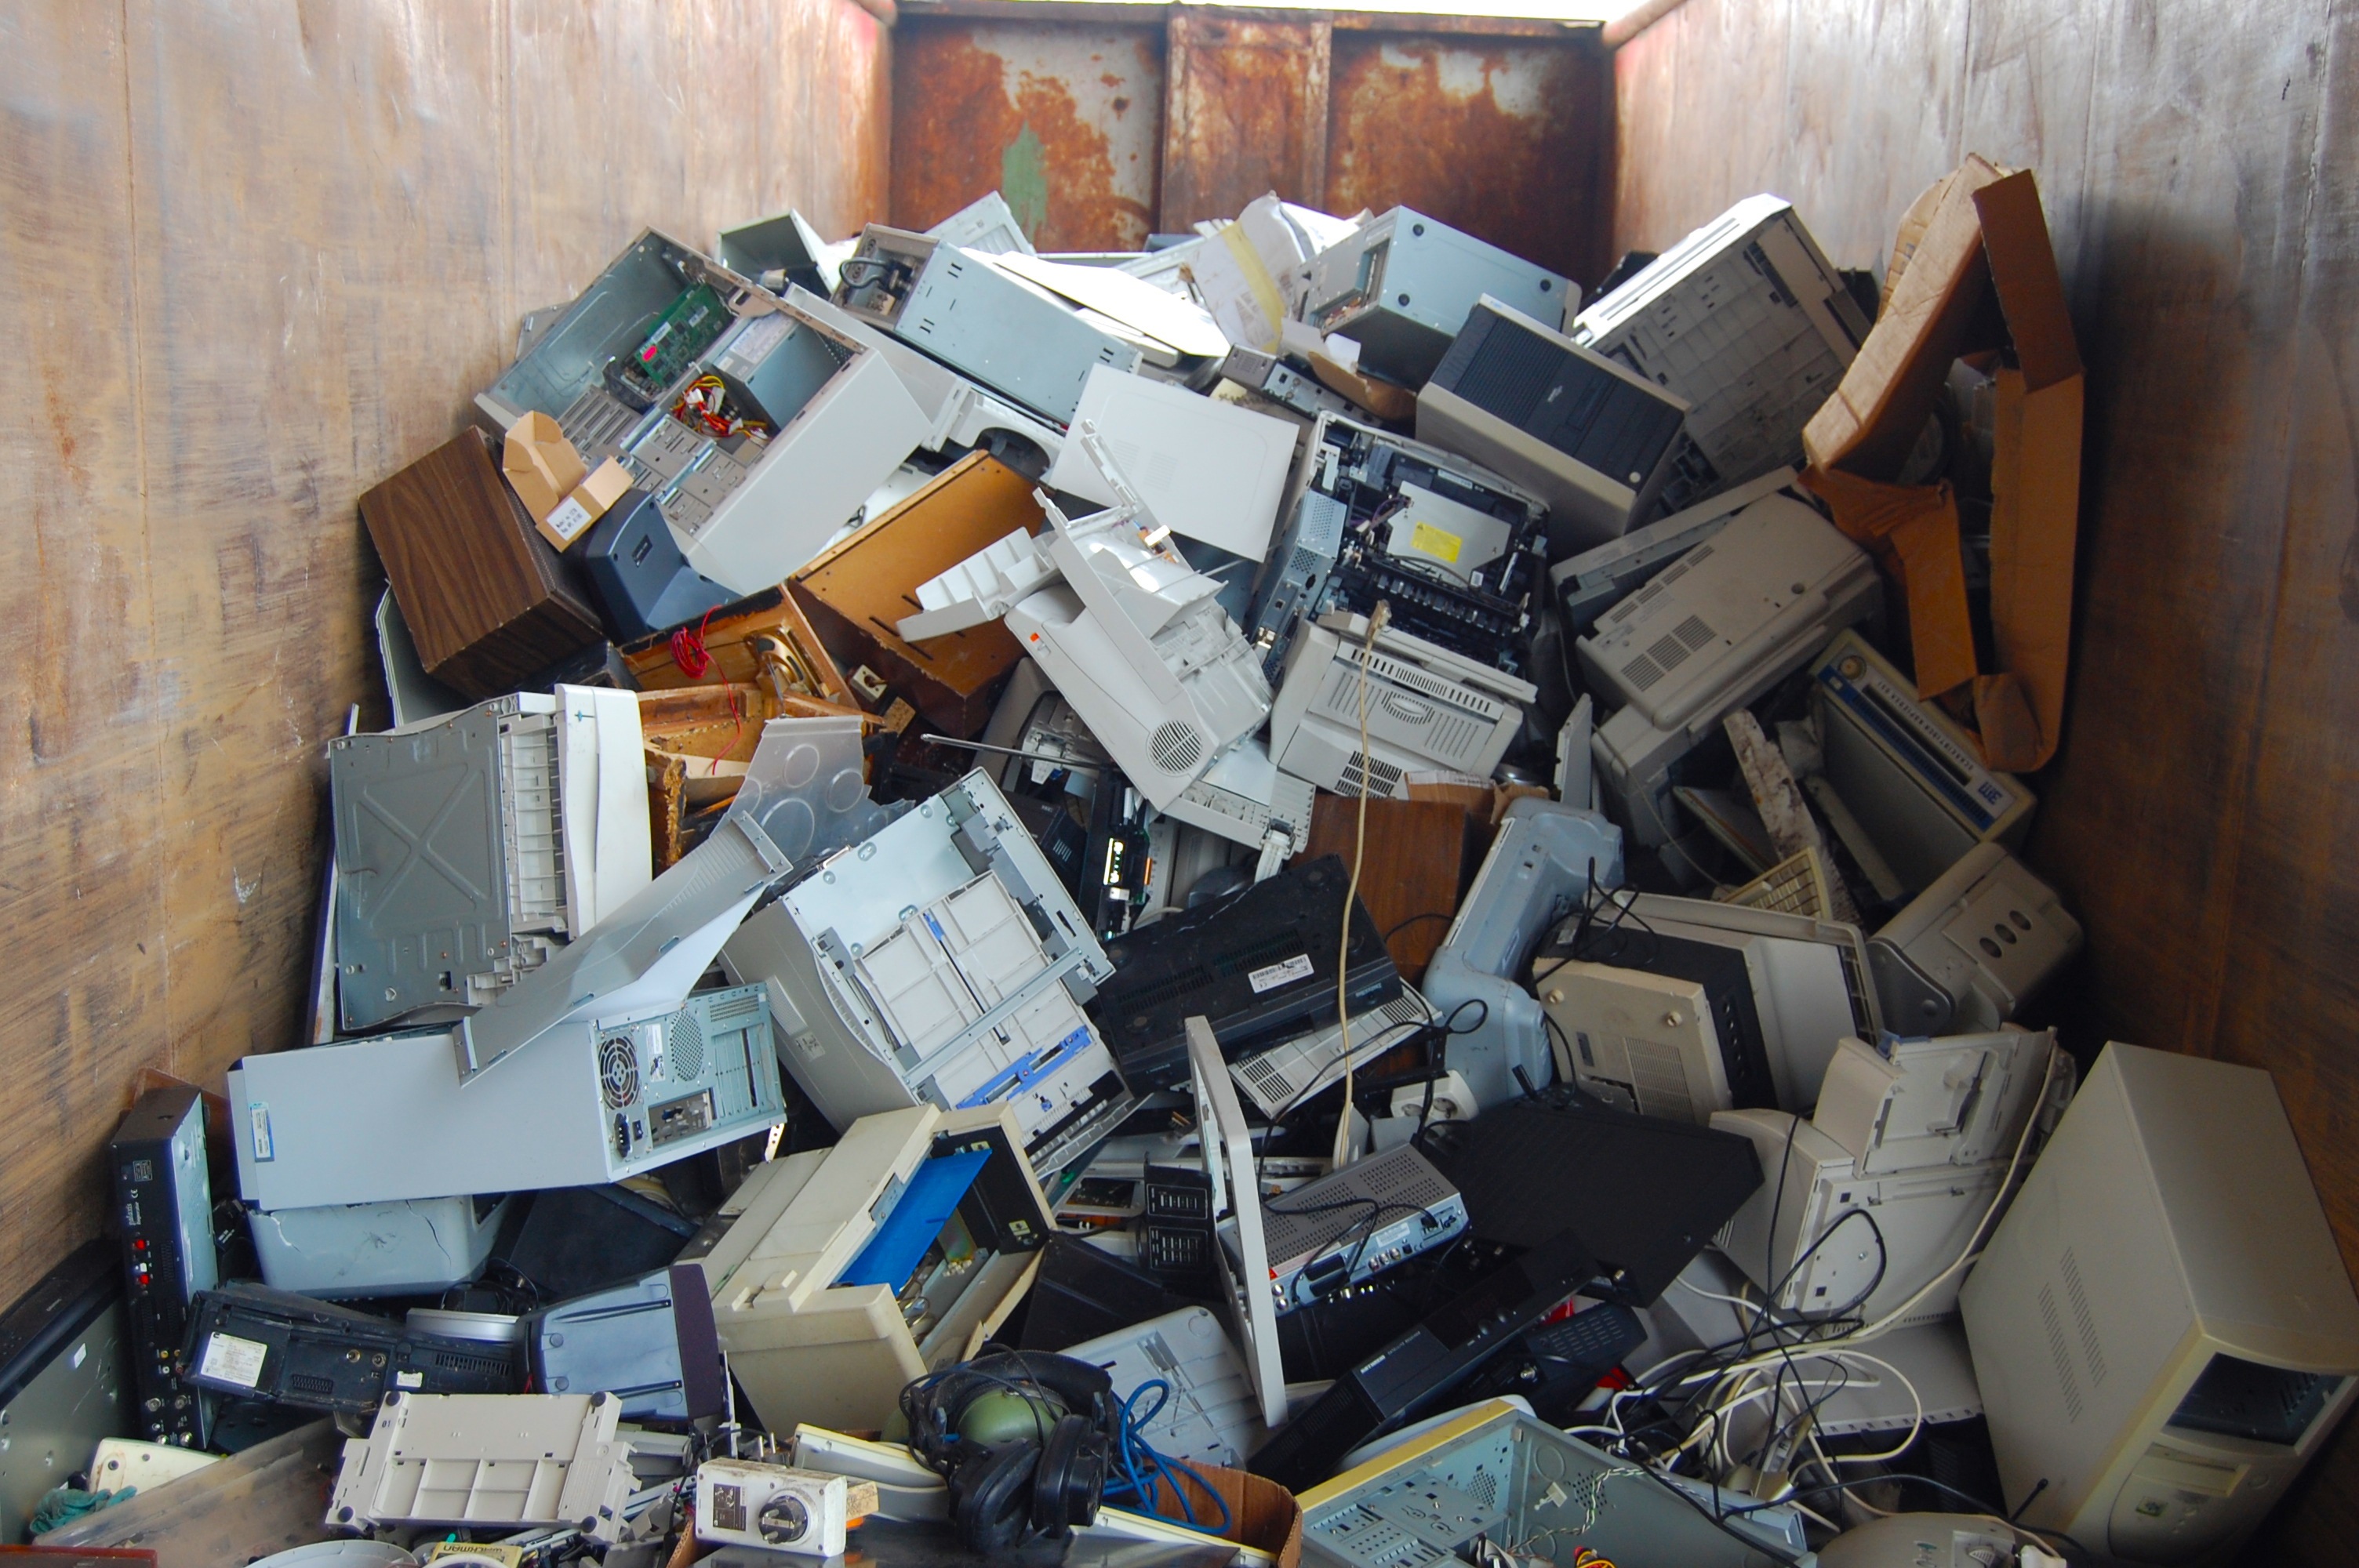 Compartimento contendo muitos computadores e outros lixos eletrônicos.